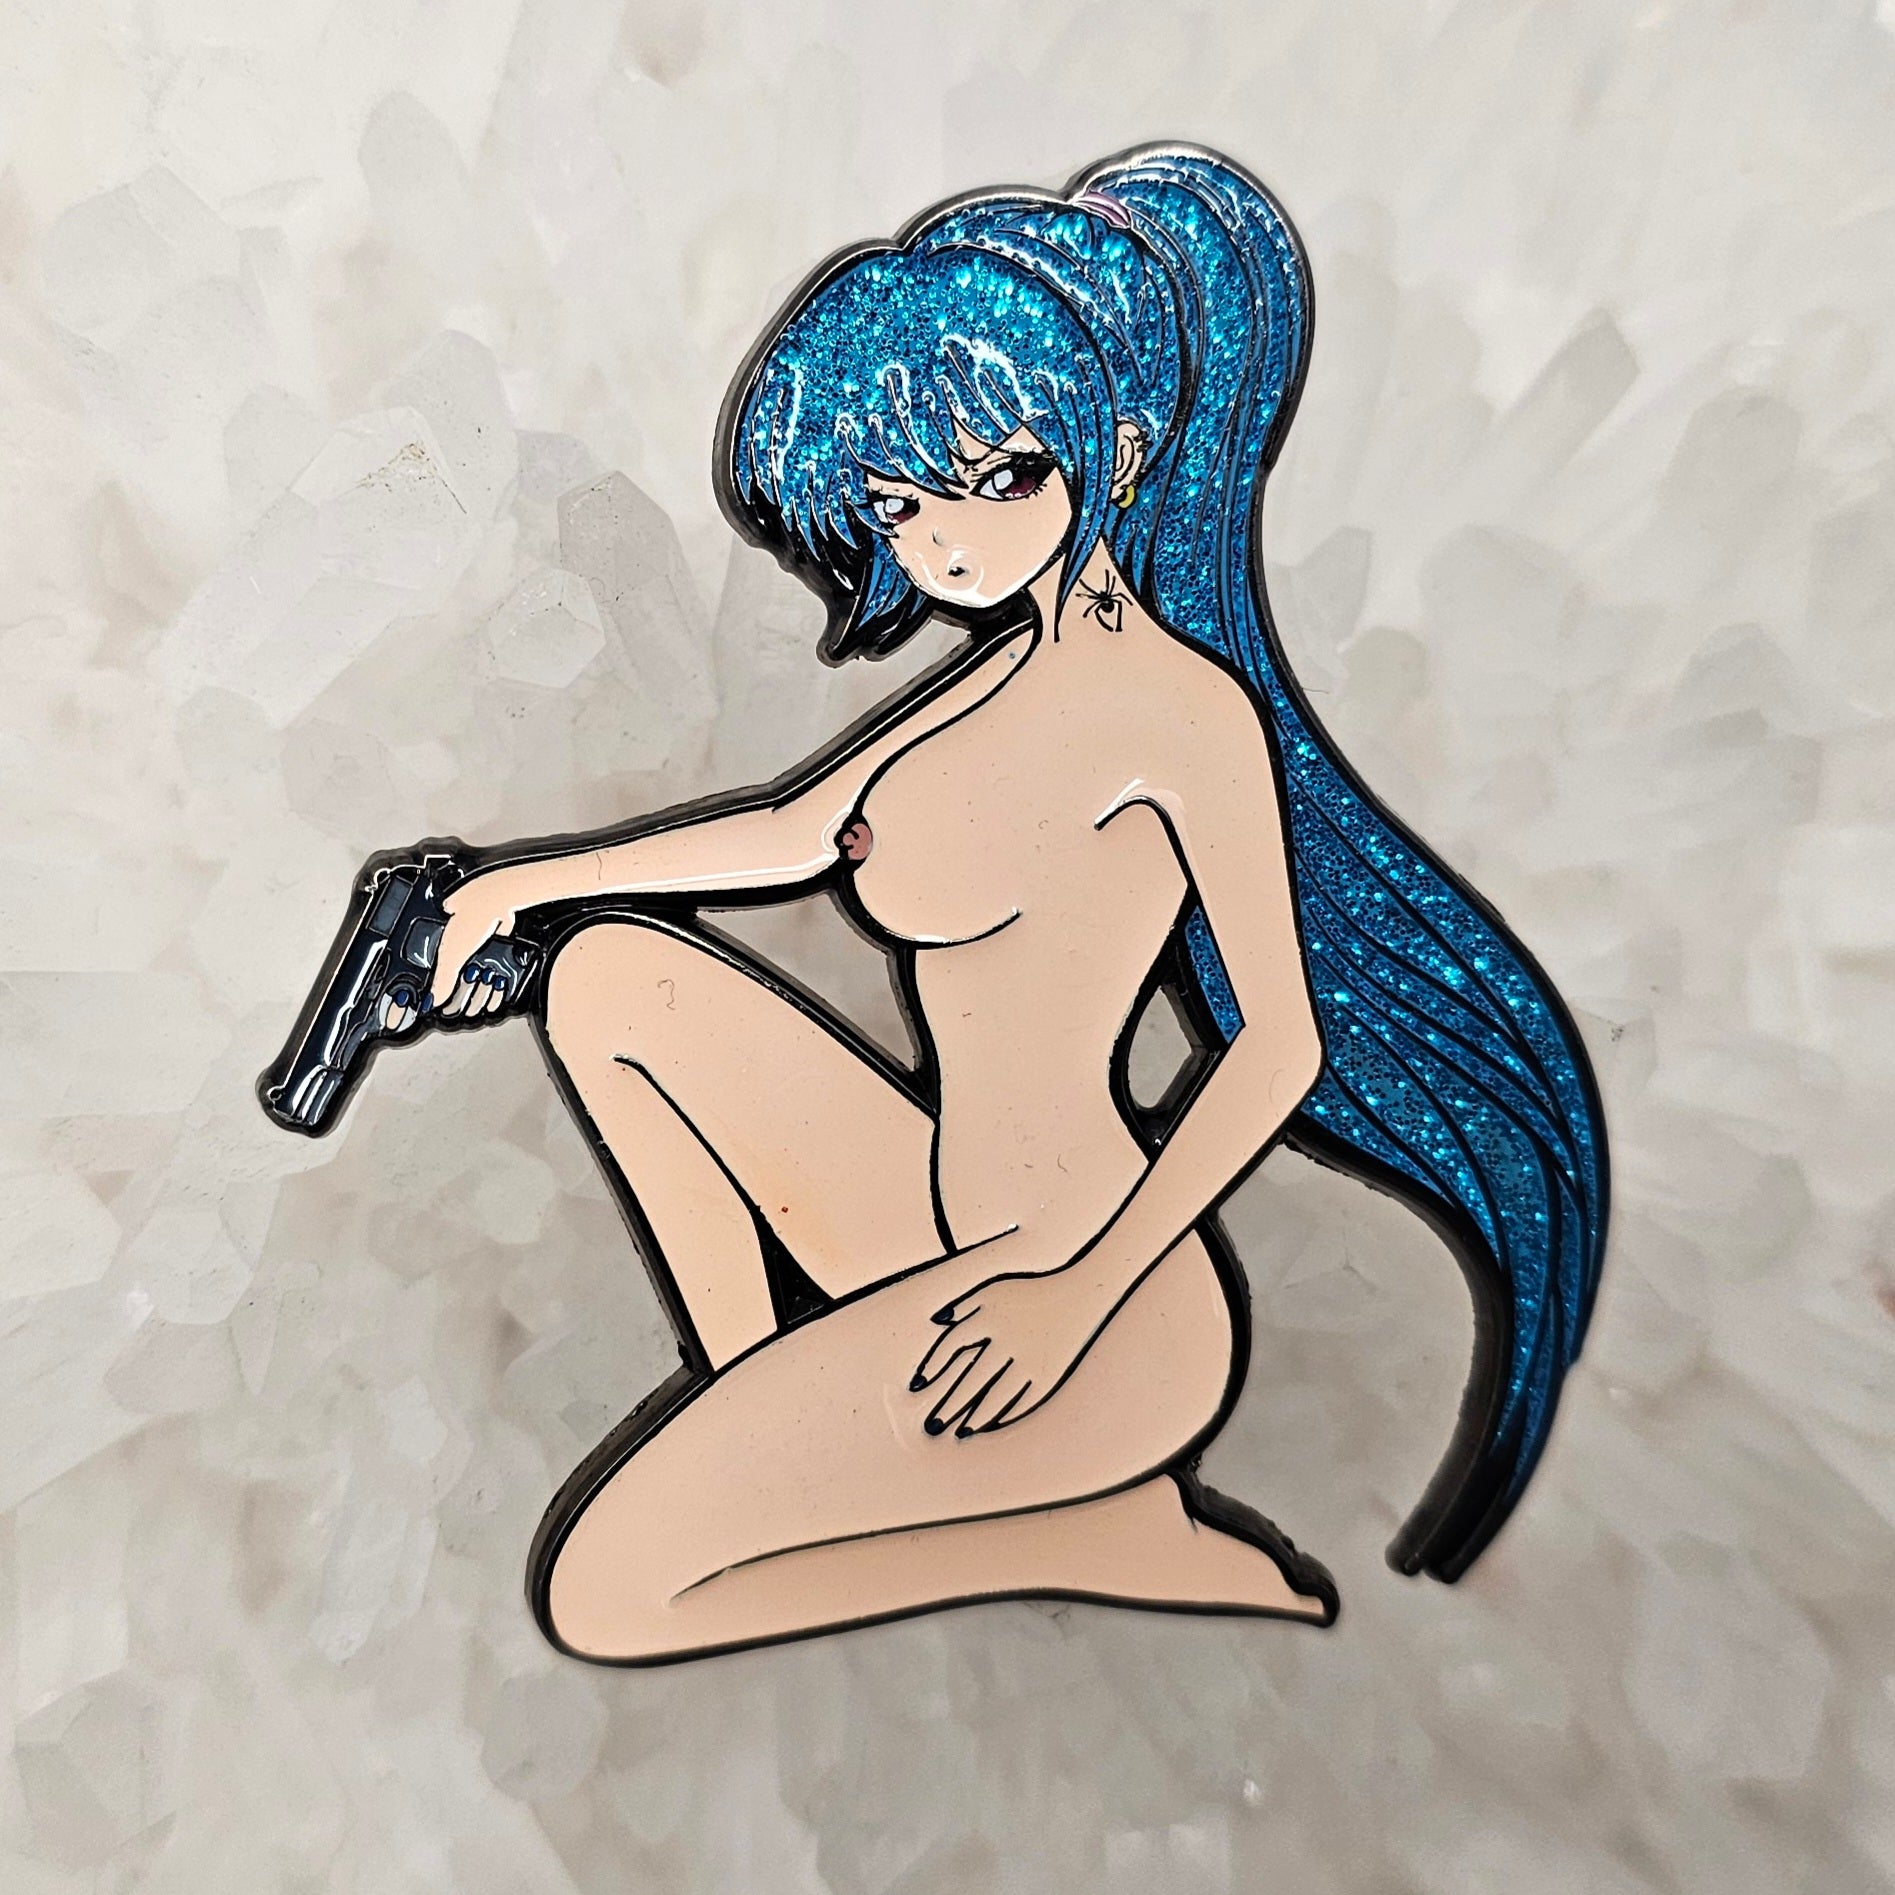 Sexy Anime Gun Girl Lewd Manga Cartoon Woman Pin Up Enamel Pins Hat Pins Lapel Pin Brooch Badge Festival Pin